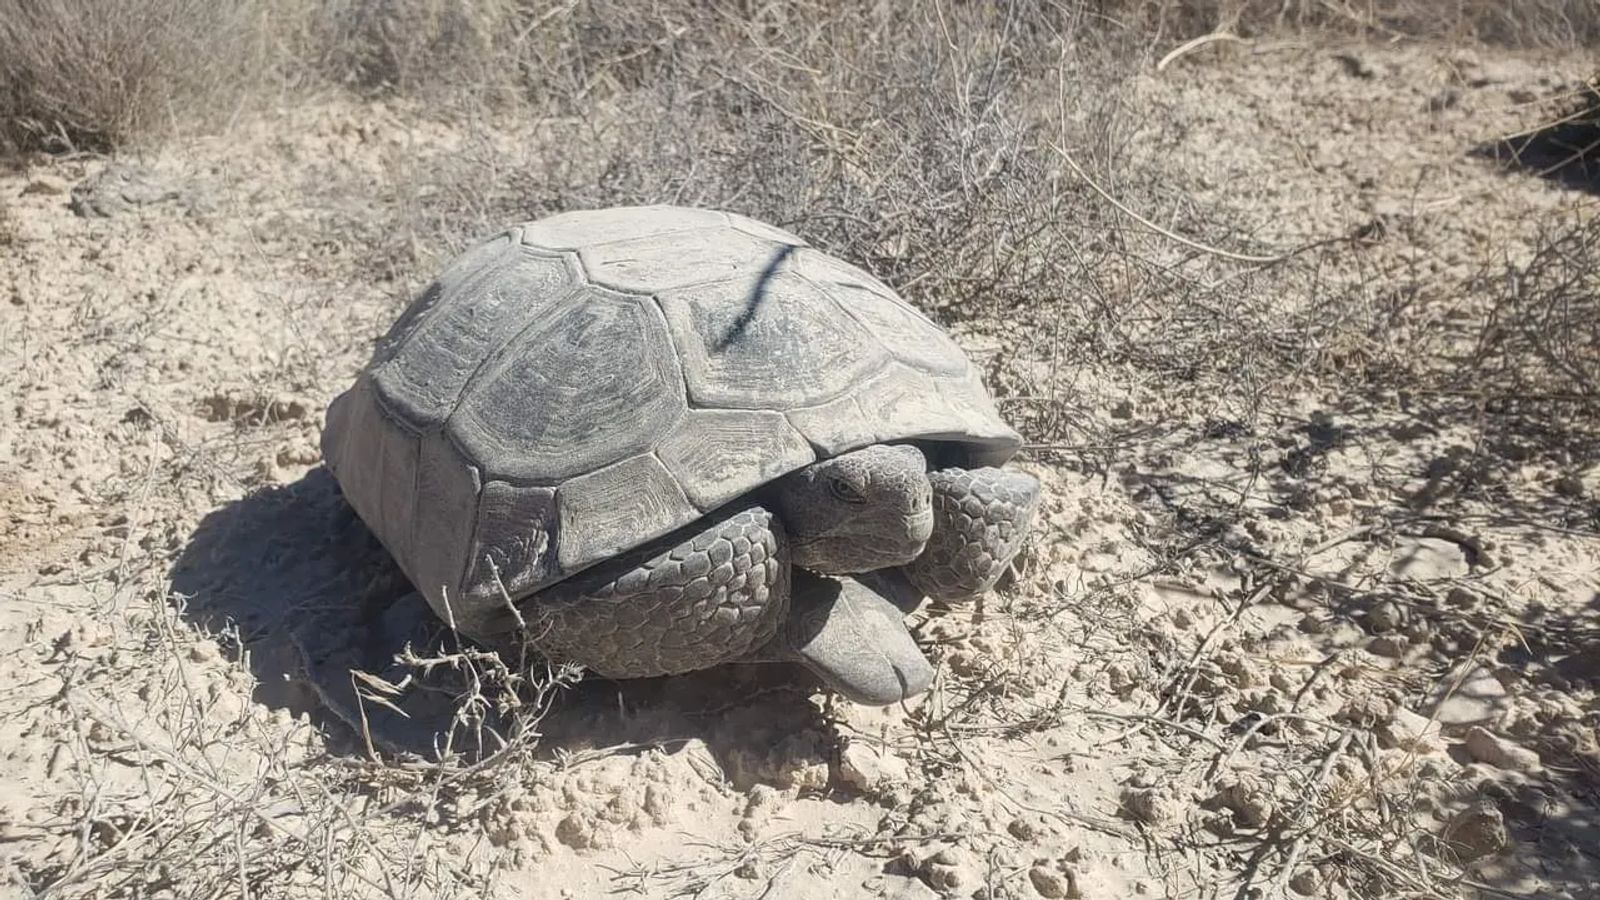 Desert Tortoise encounter while exploring southern Utah hidden gems